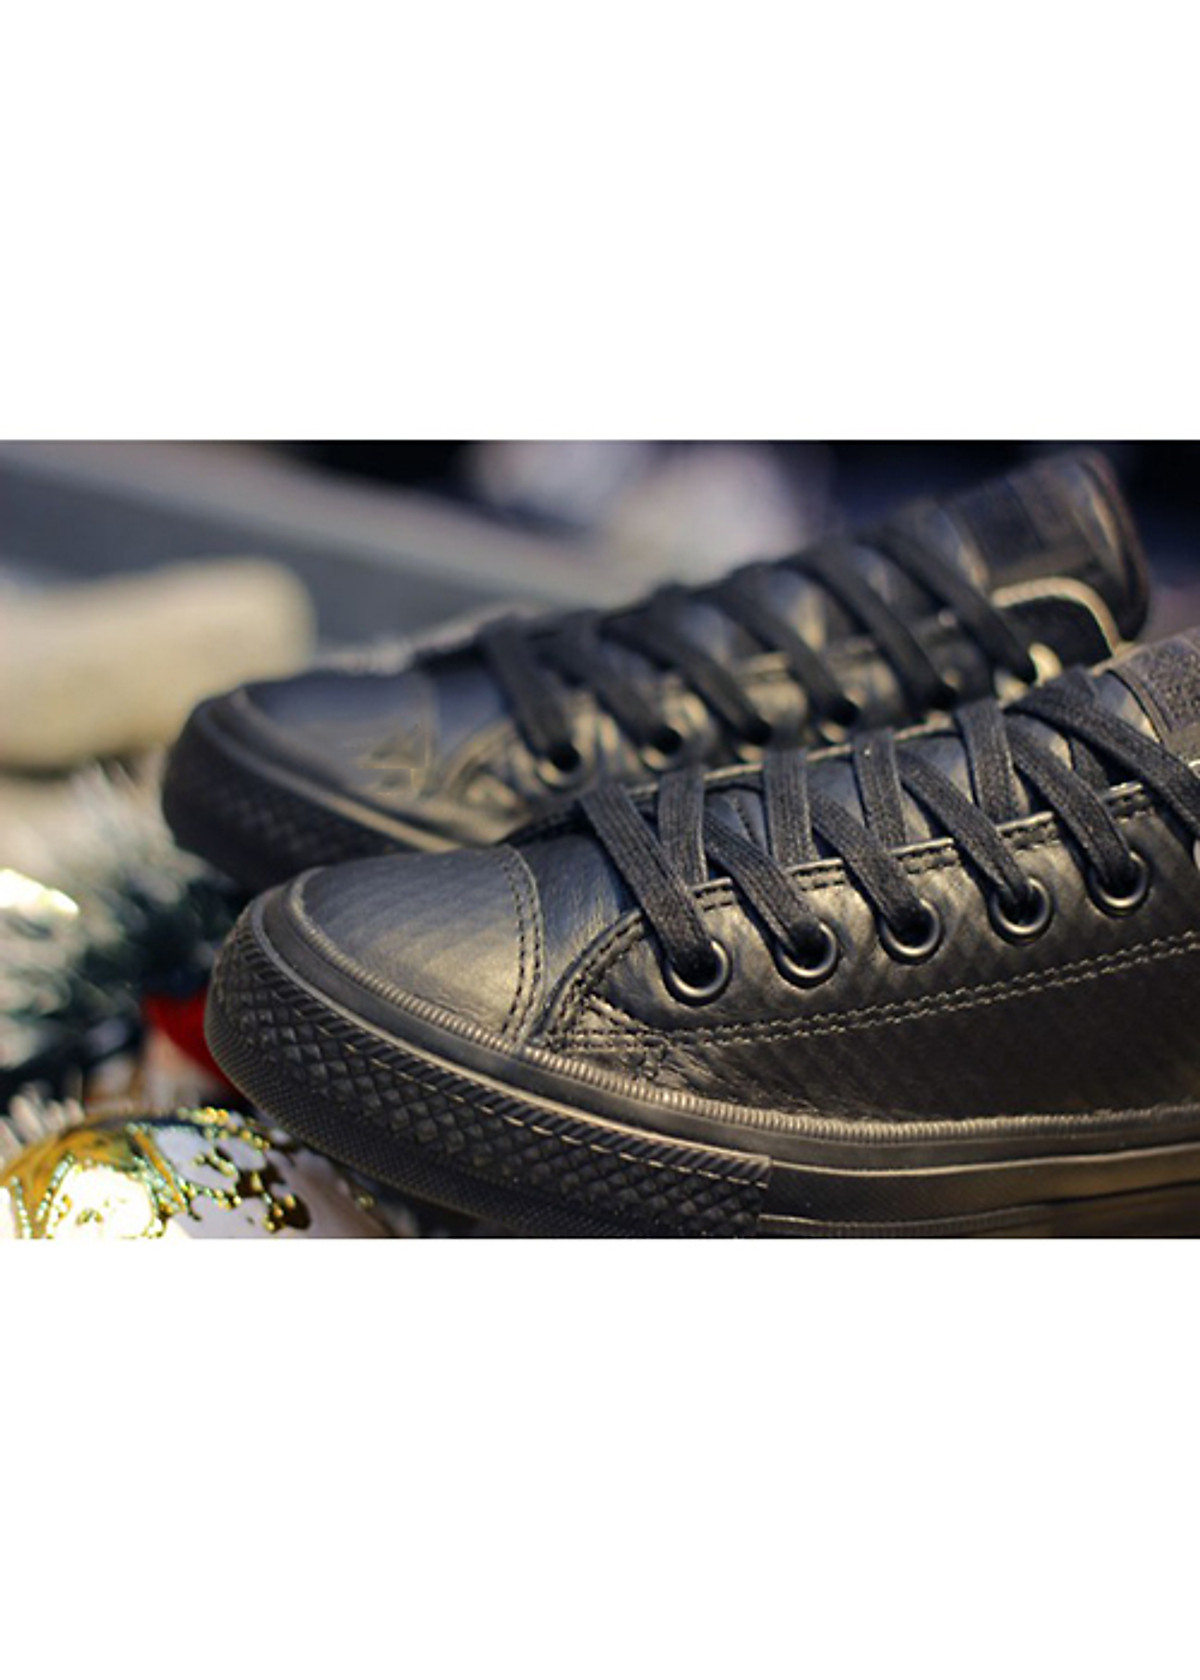 Mua Giày Sneaker Unisex CHUCK TAYLOR ALL STAR II MESH BACKED LEATHER 153556  Fullbox ( Gồm giày, túi đựng giày, hộp đựng ) | Tiki